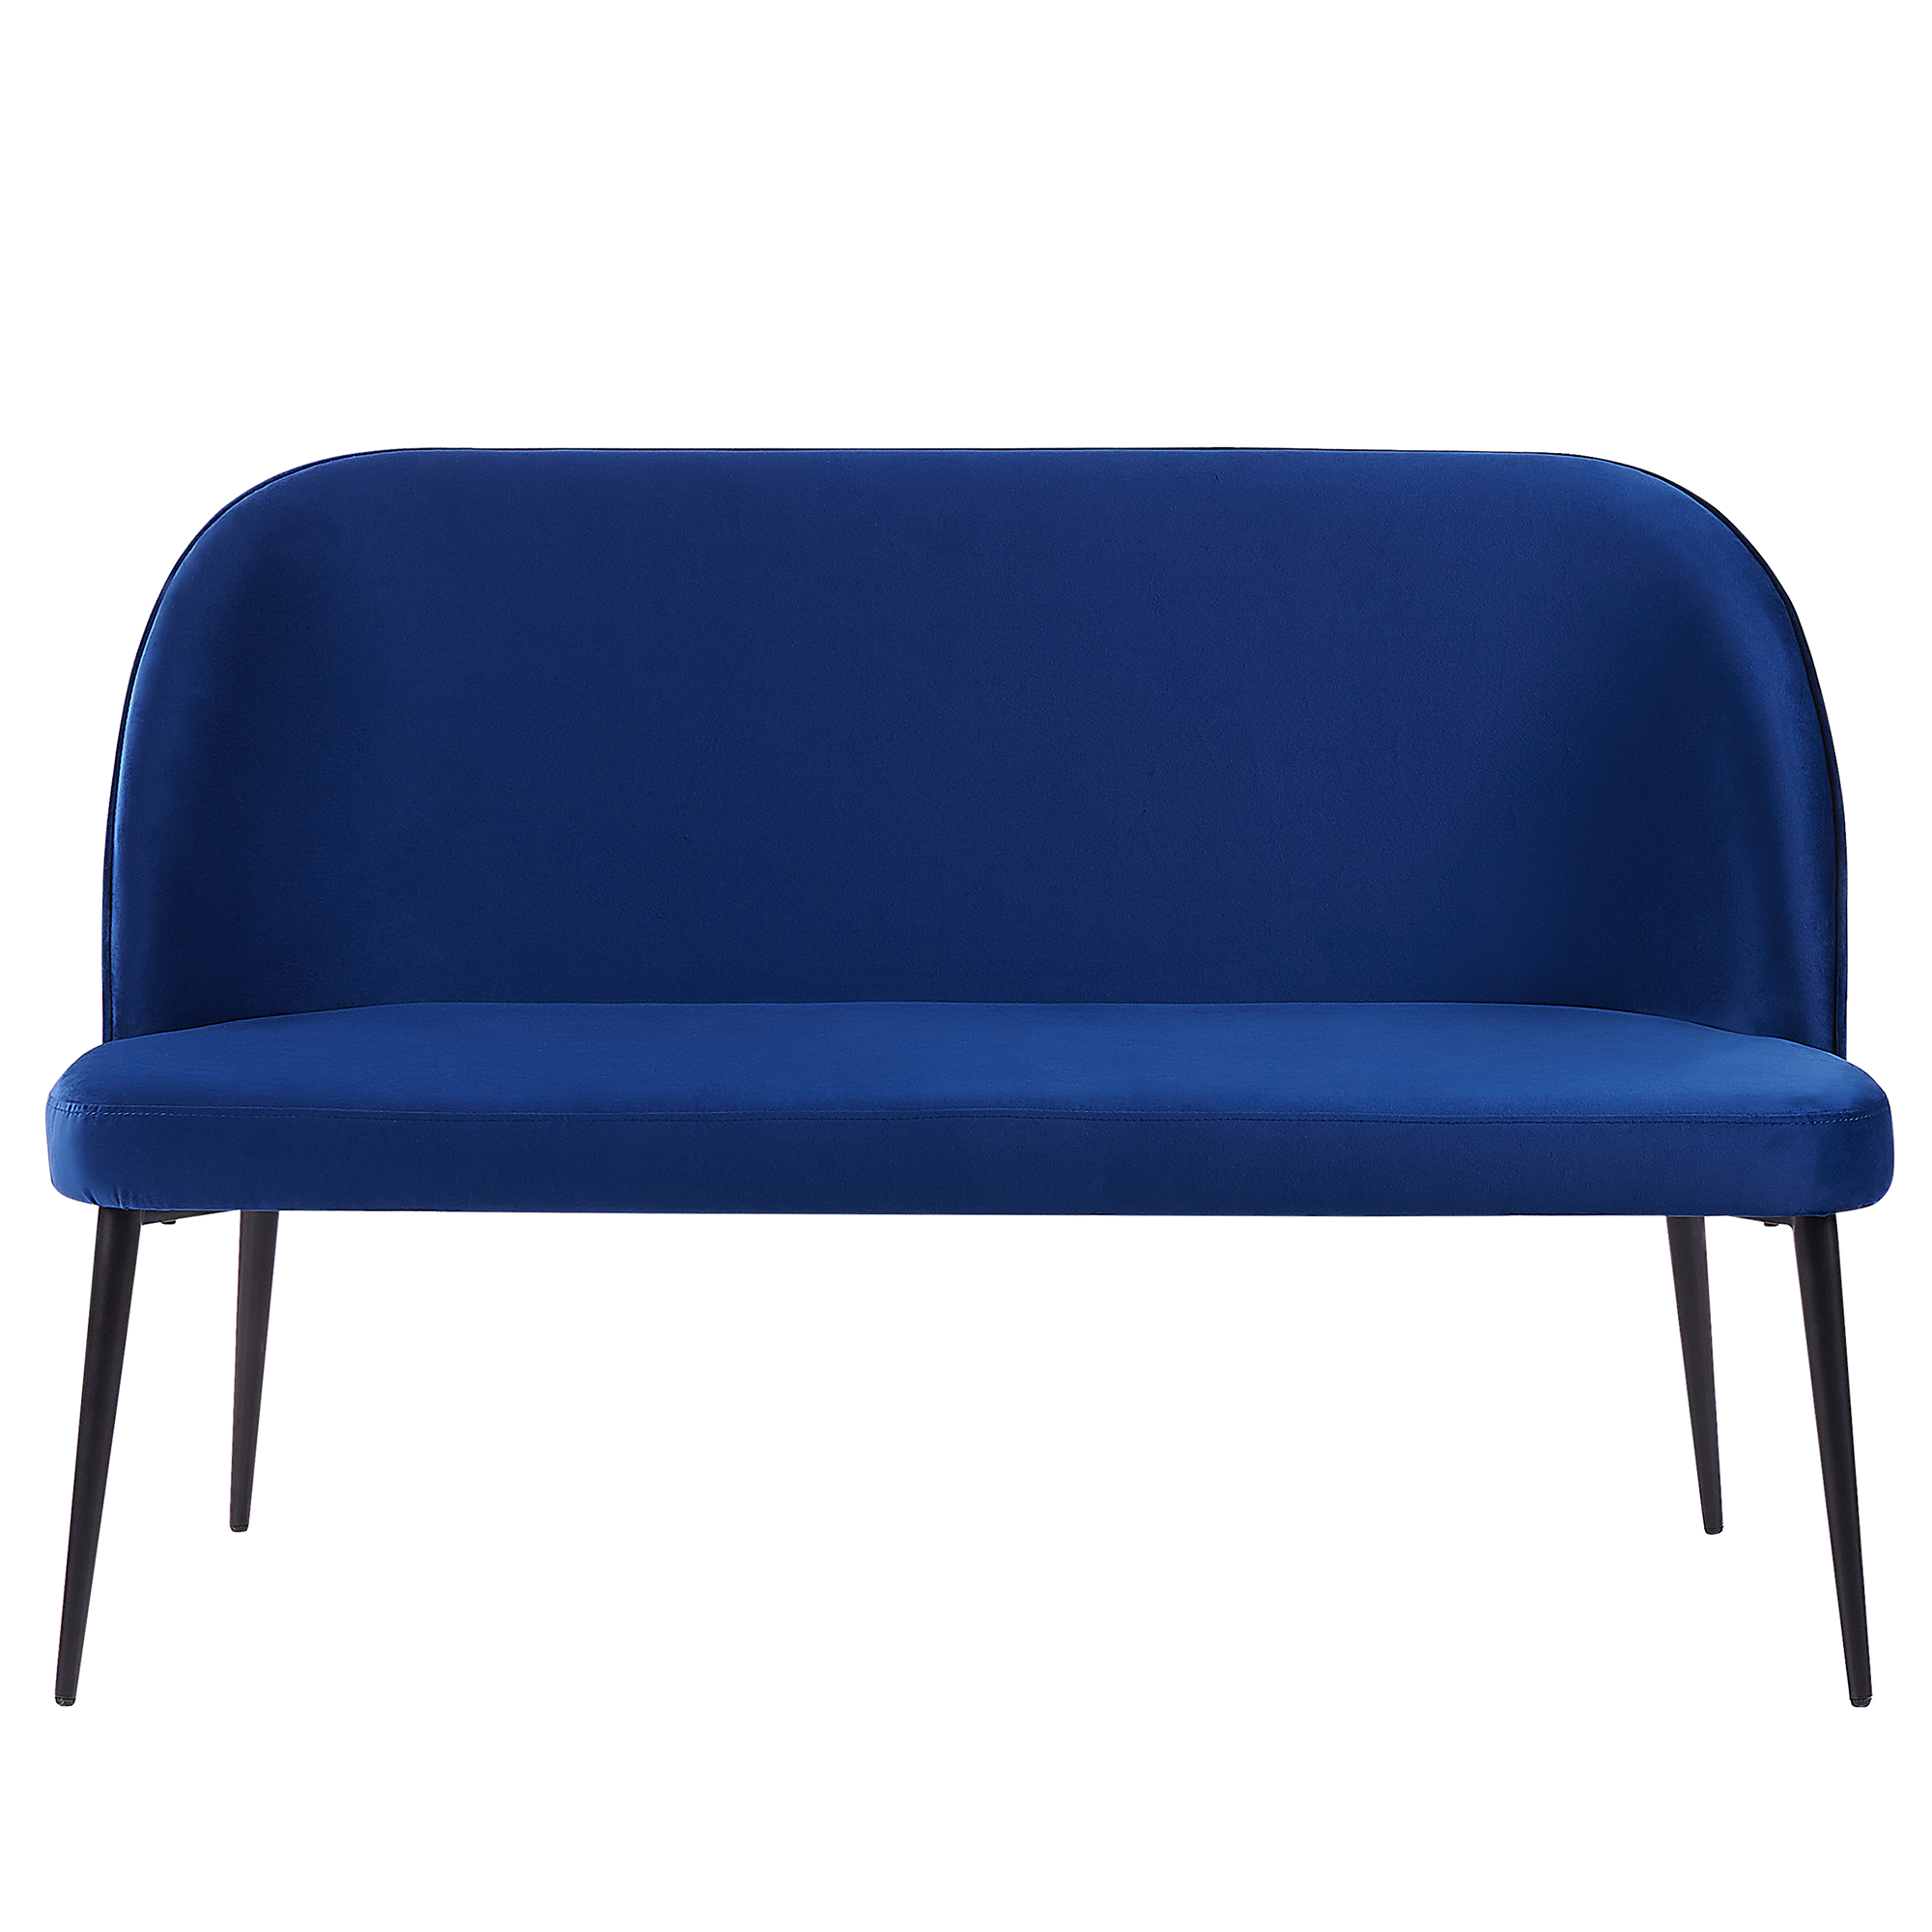 Beliani Kitchen Sofa Navy Blue Velvet Fabric Upholstery 2-Seater Metal Frame Black Legs Bench